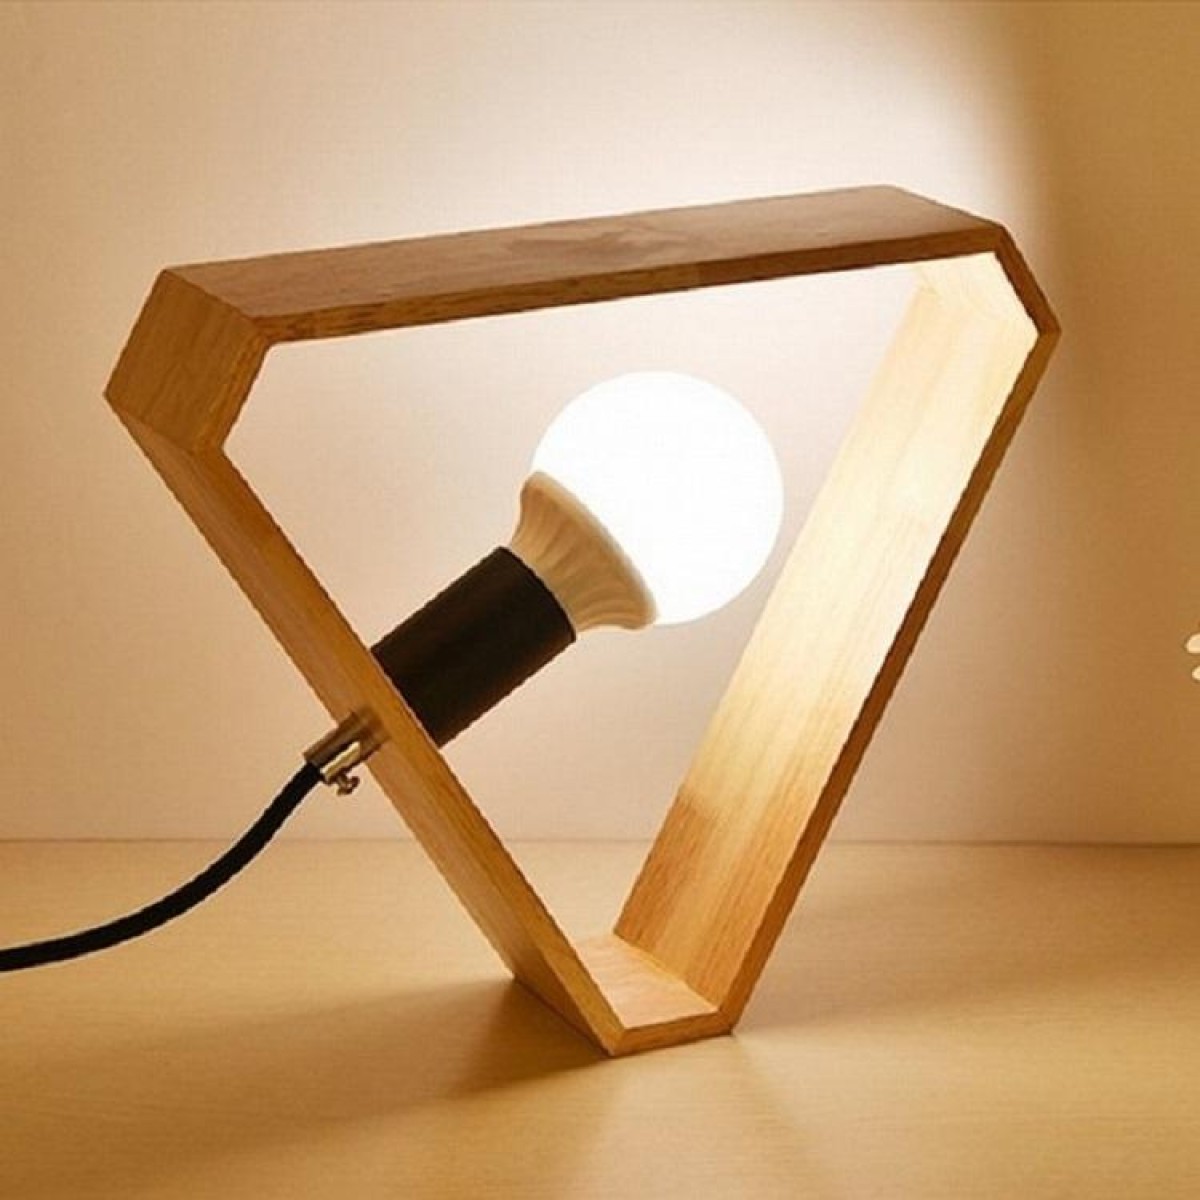 Retro Wooden Art Bedroom Bedside Eye Protection LED Desk Lamp, AC 220V, US Plug(Triangle Shape)